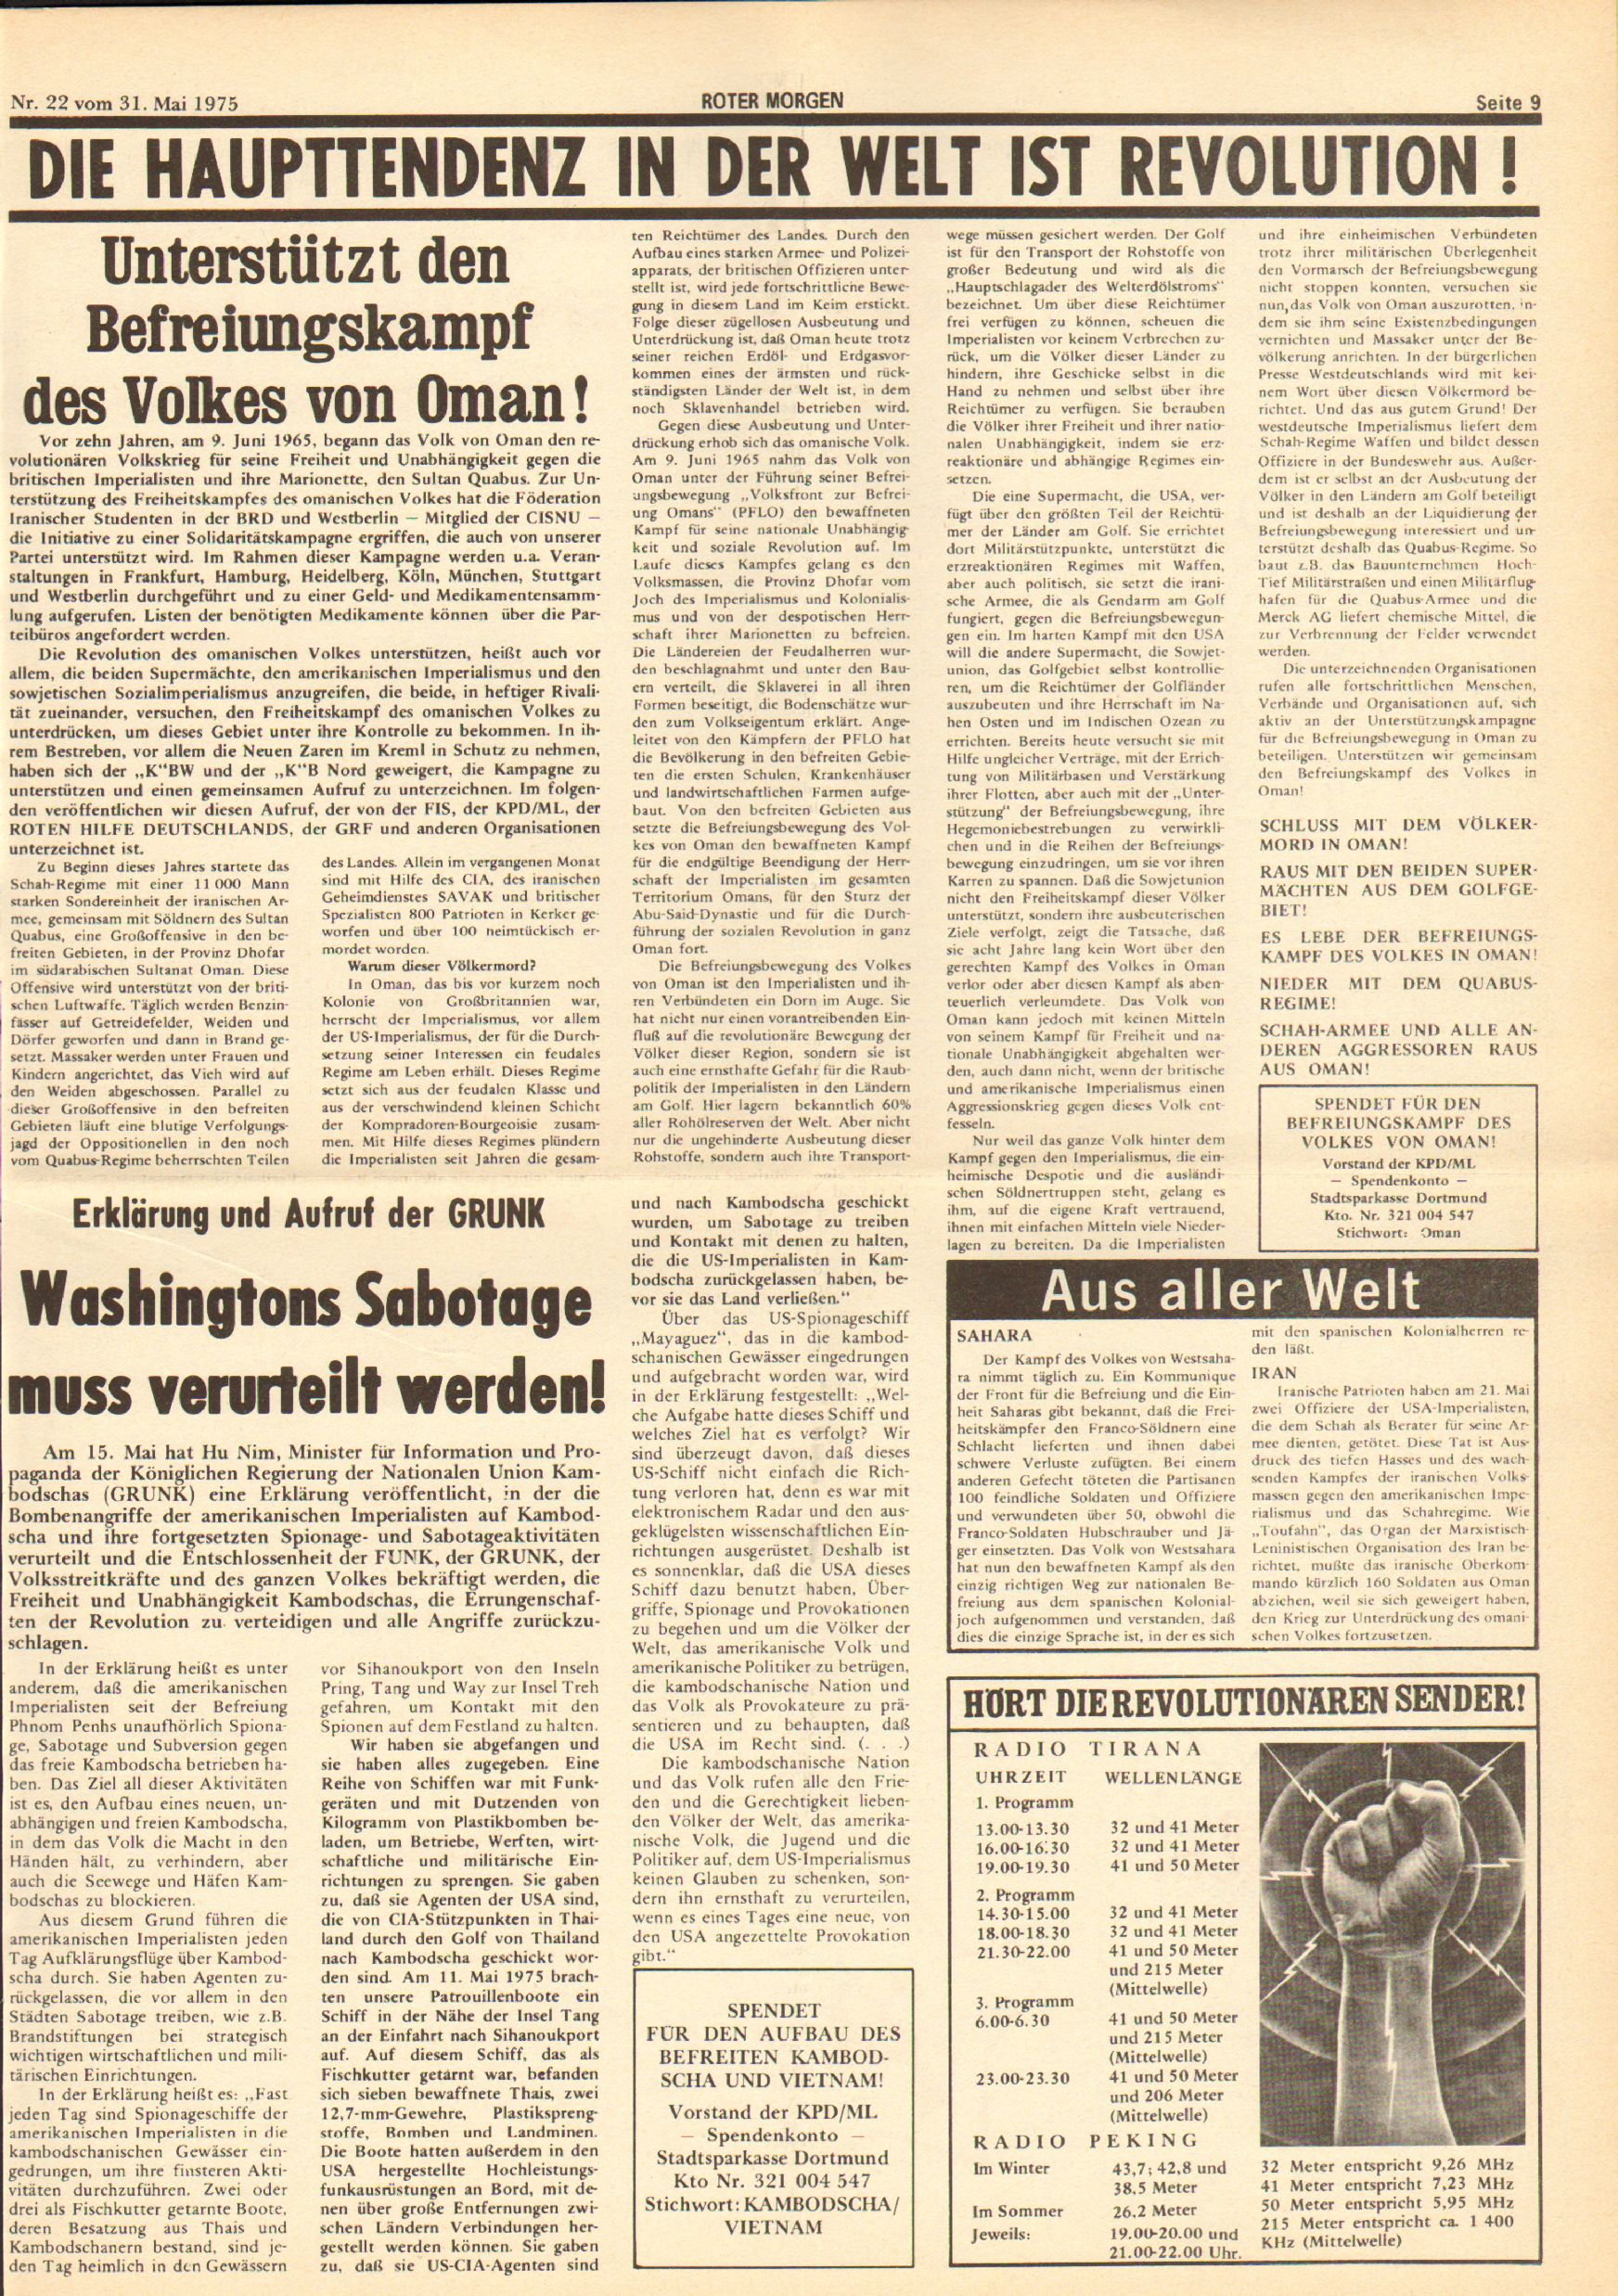 Roter Morgen, 9. Jg., 31. Mai 1975, Nr. 22, Beilage zur GRF, Seite 1 und 8